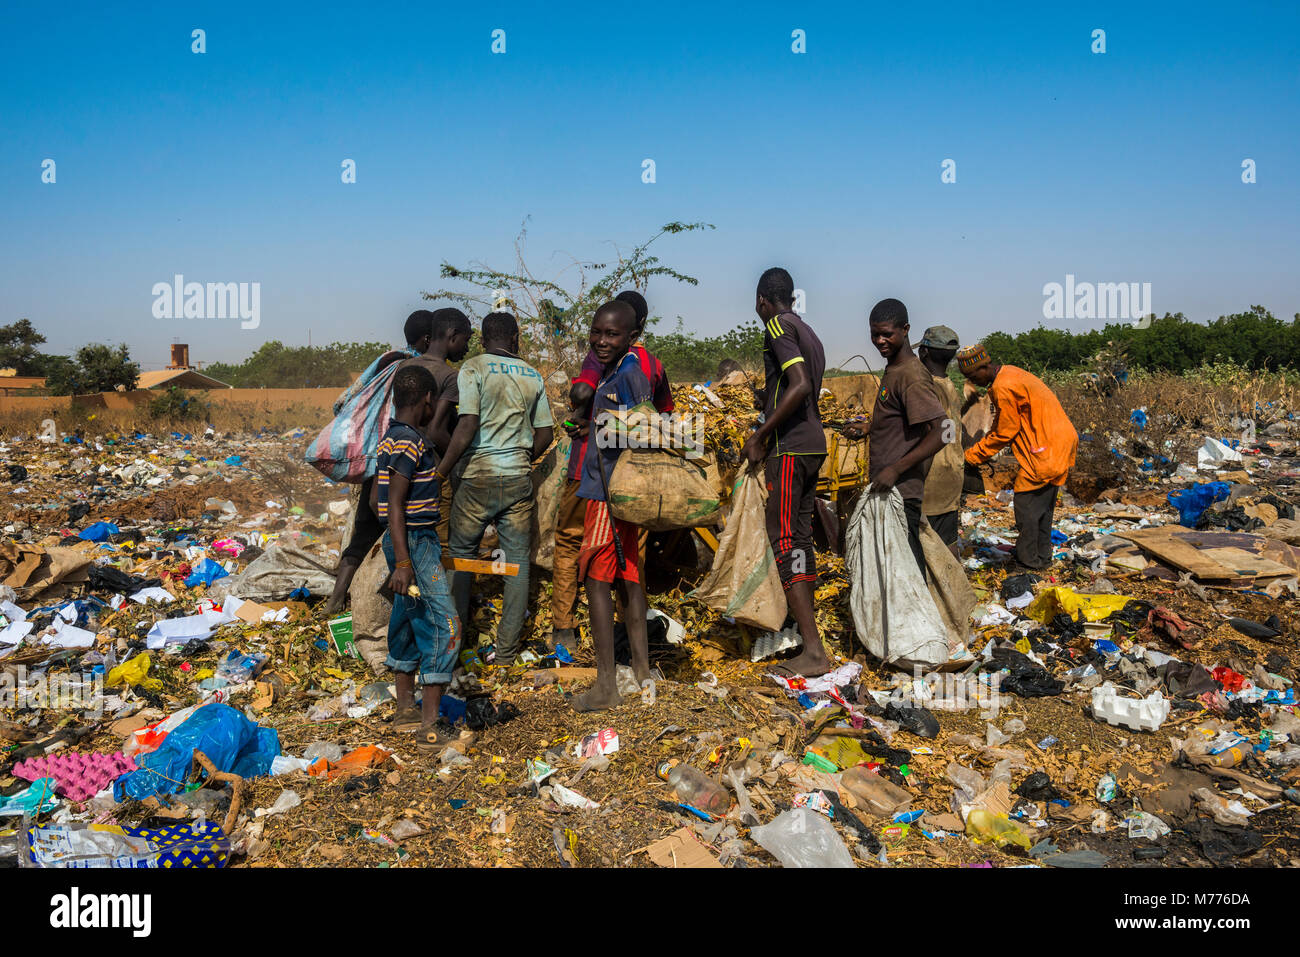 Ragazzi locali alla ricerca di oggetti di valore nella pubblica discarica, Niamey, Niger, Africa Foto Stock